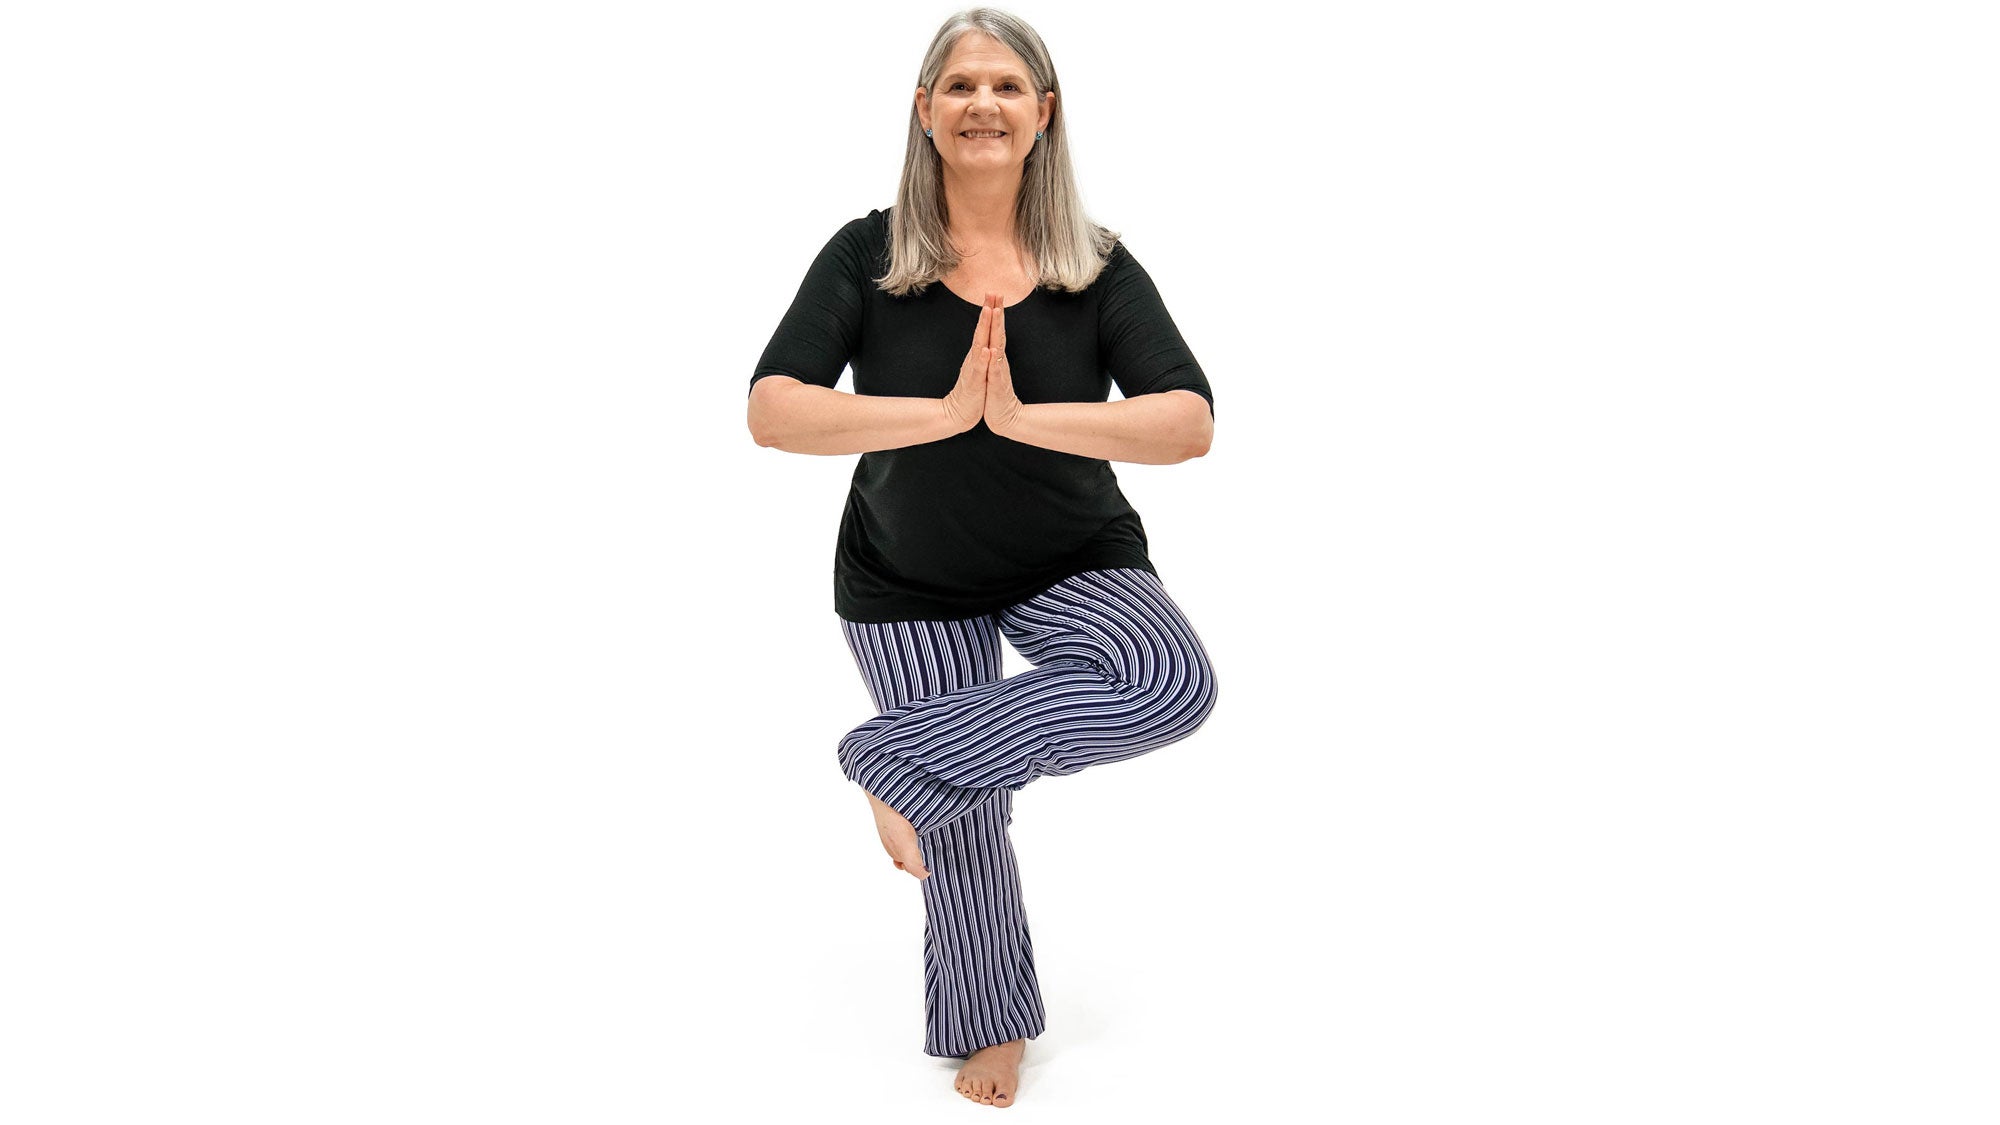 OM Yoga in a Box: Intermediate Level by Cyndi Lee (#2451) :: Top